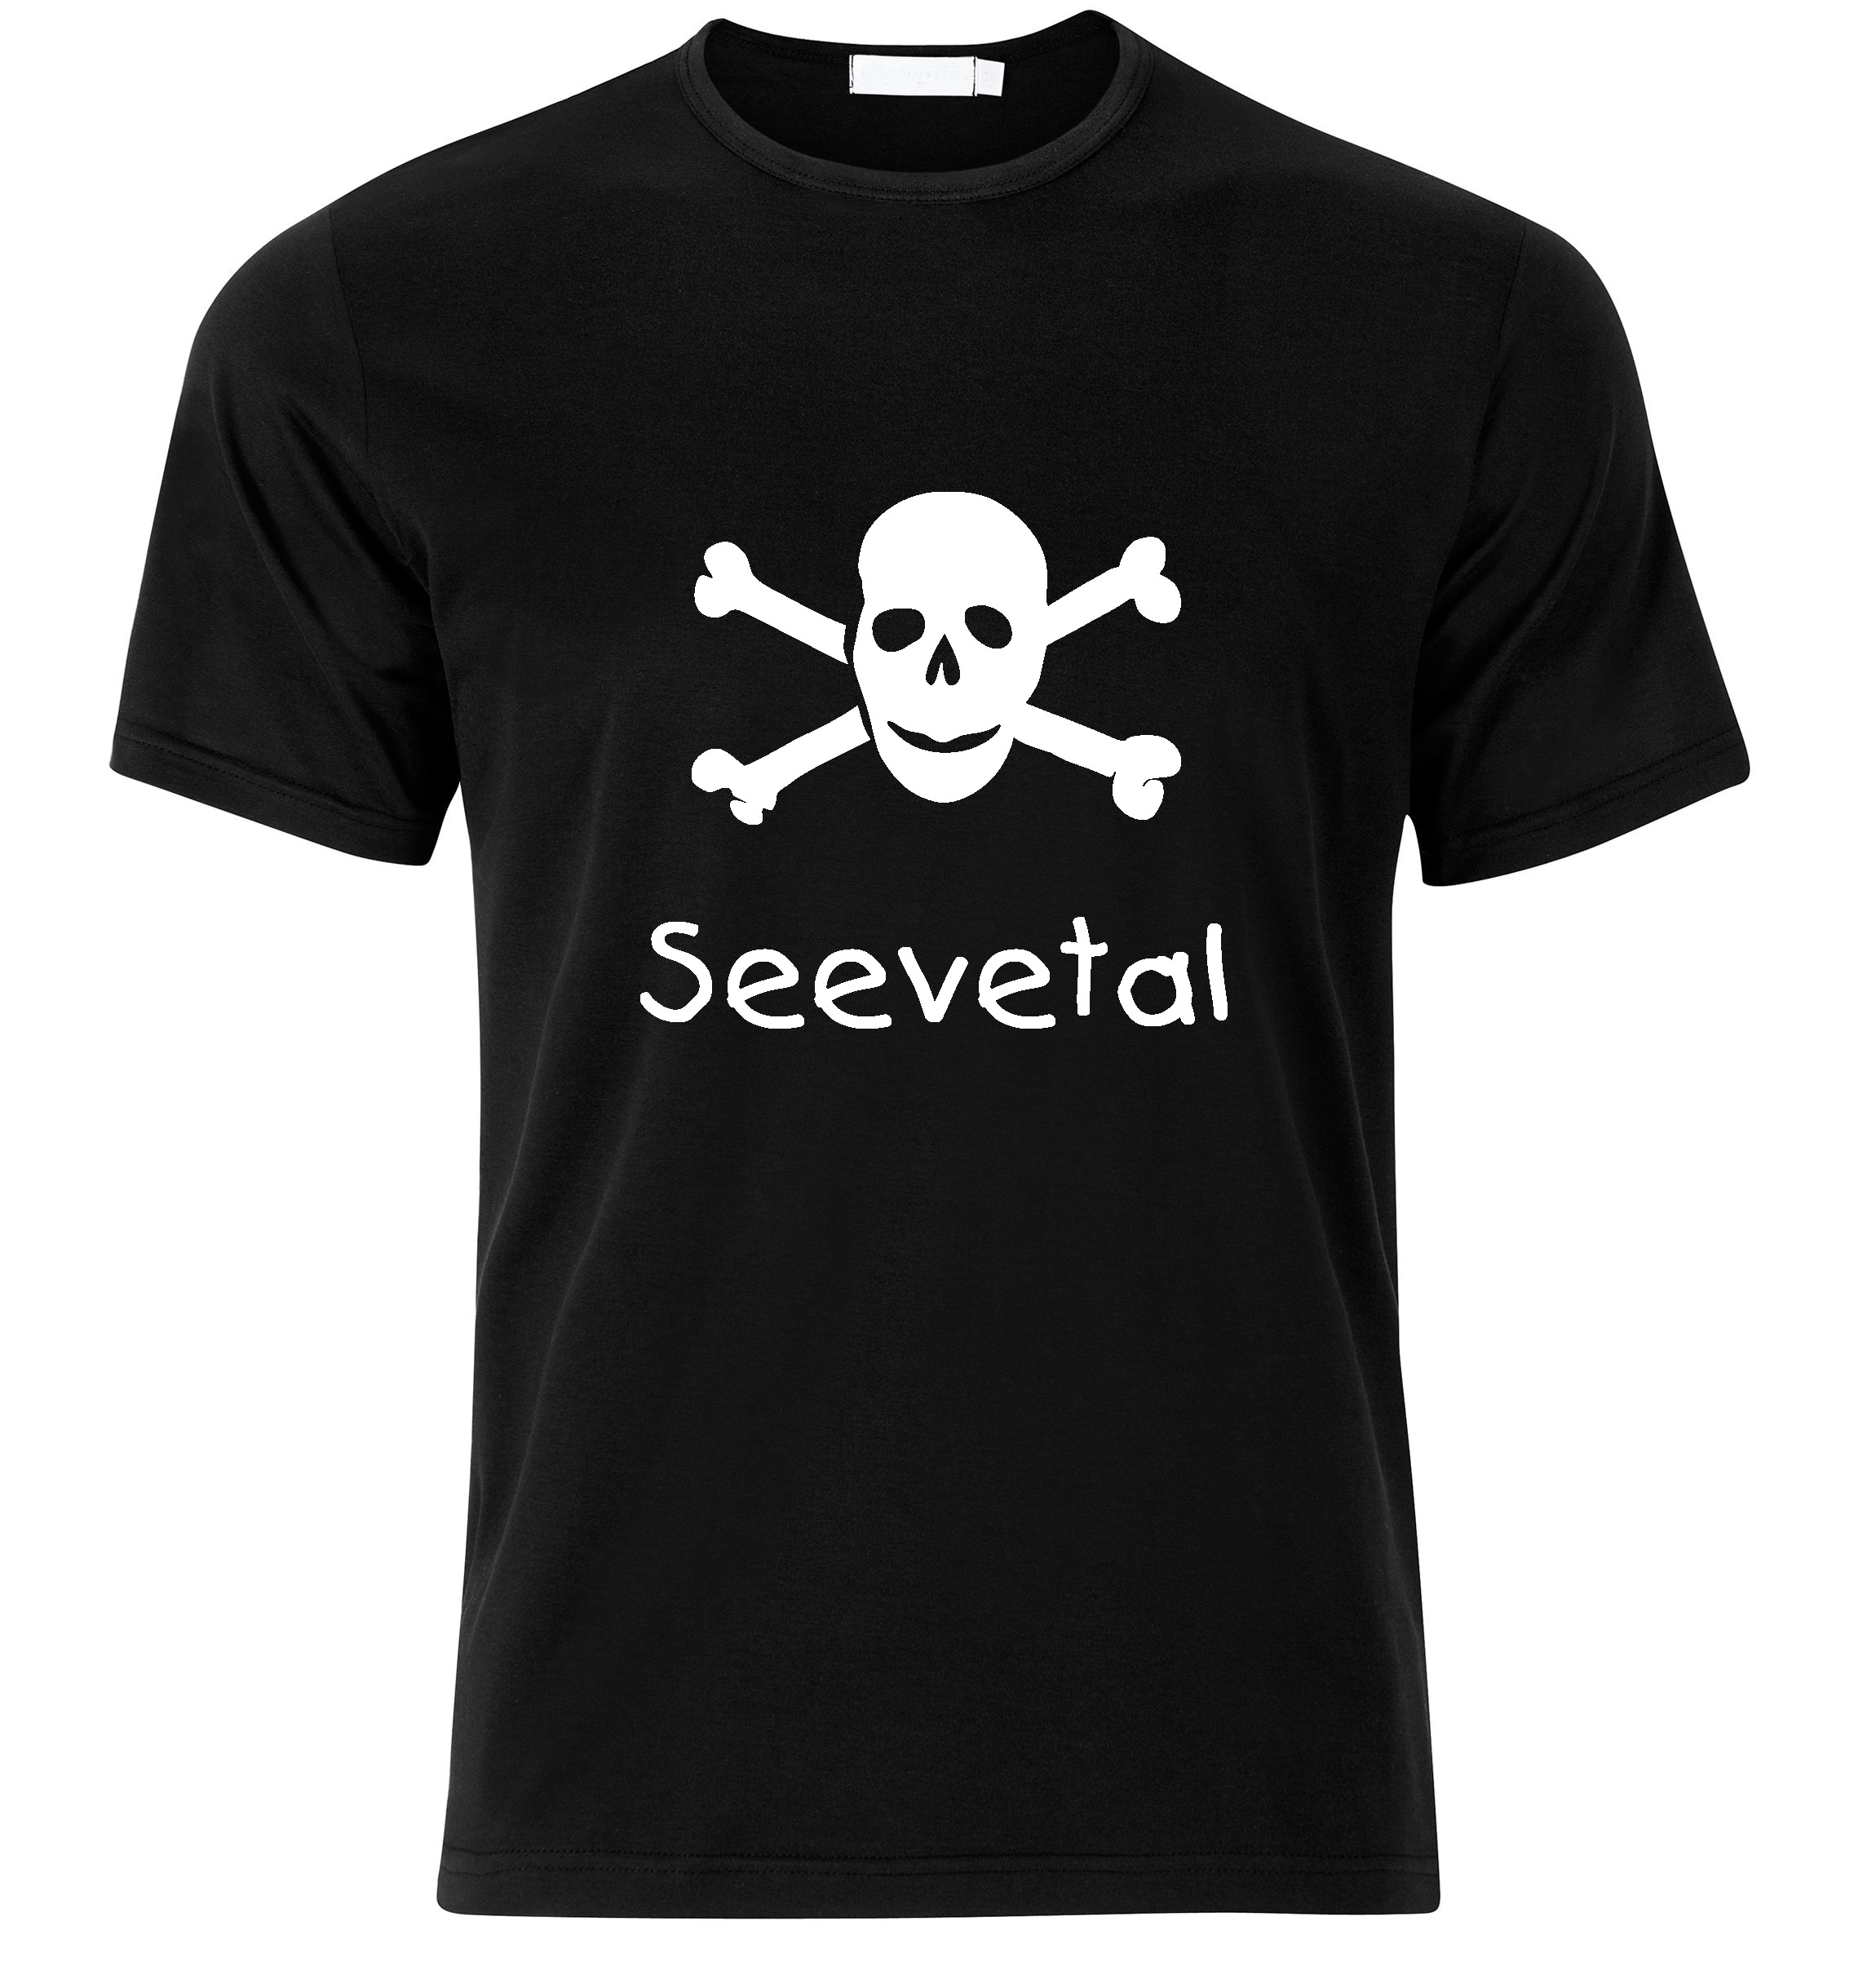 T-Shirt Seevetal Jolly Roger, Totenkopf